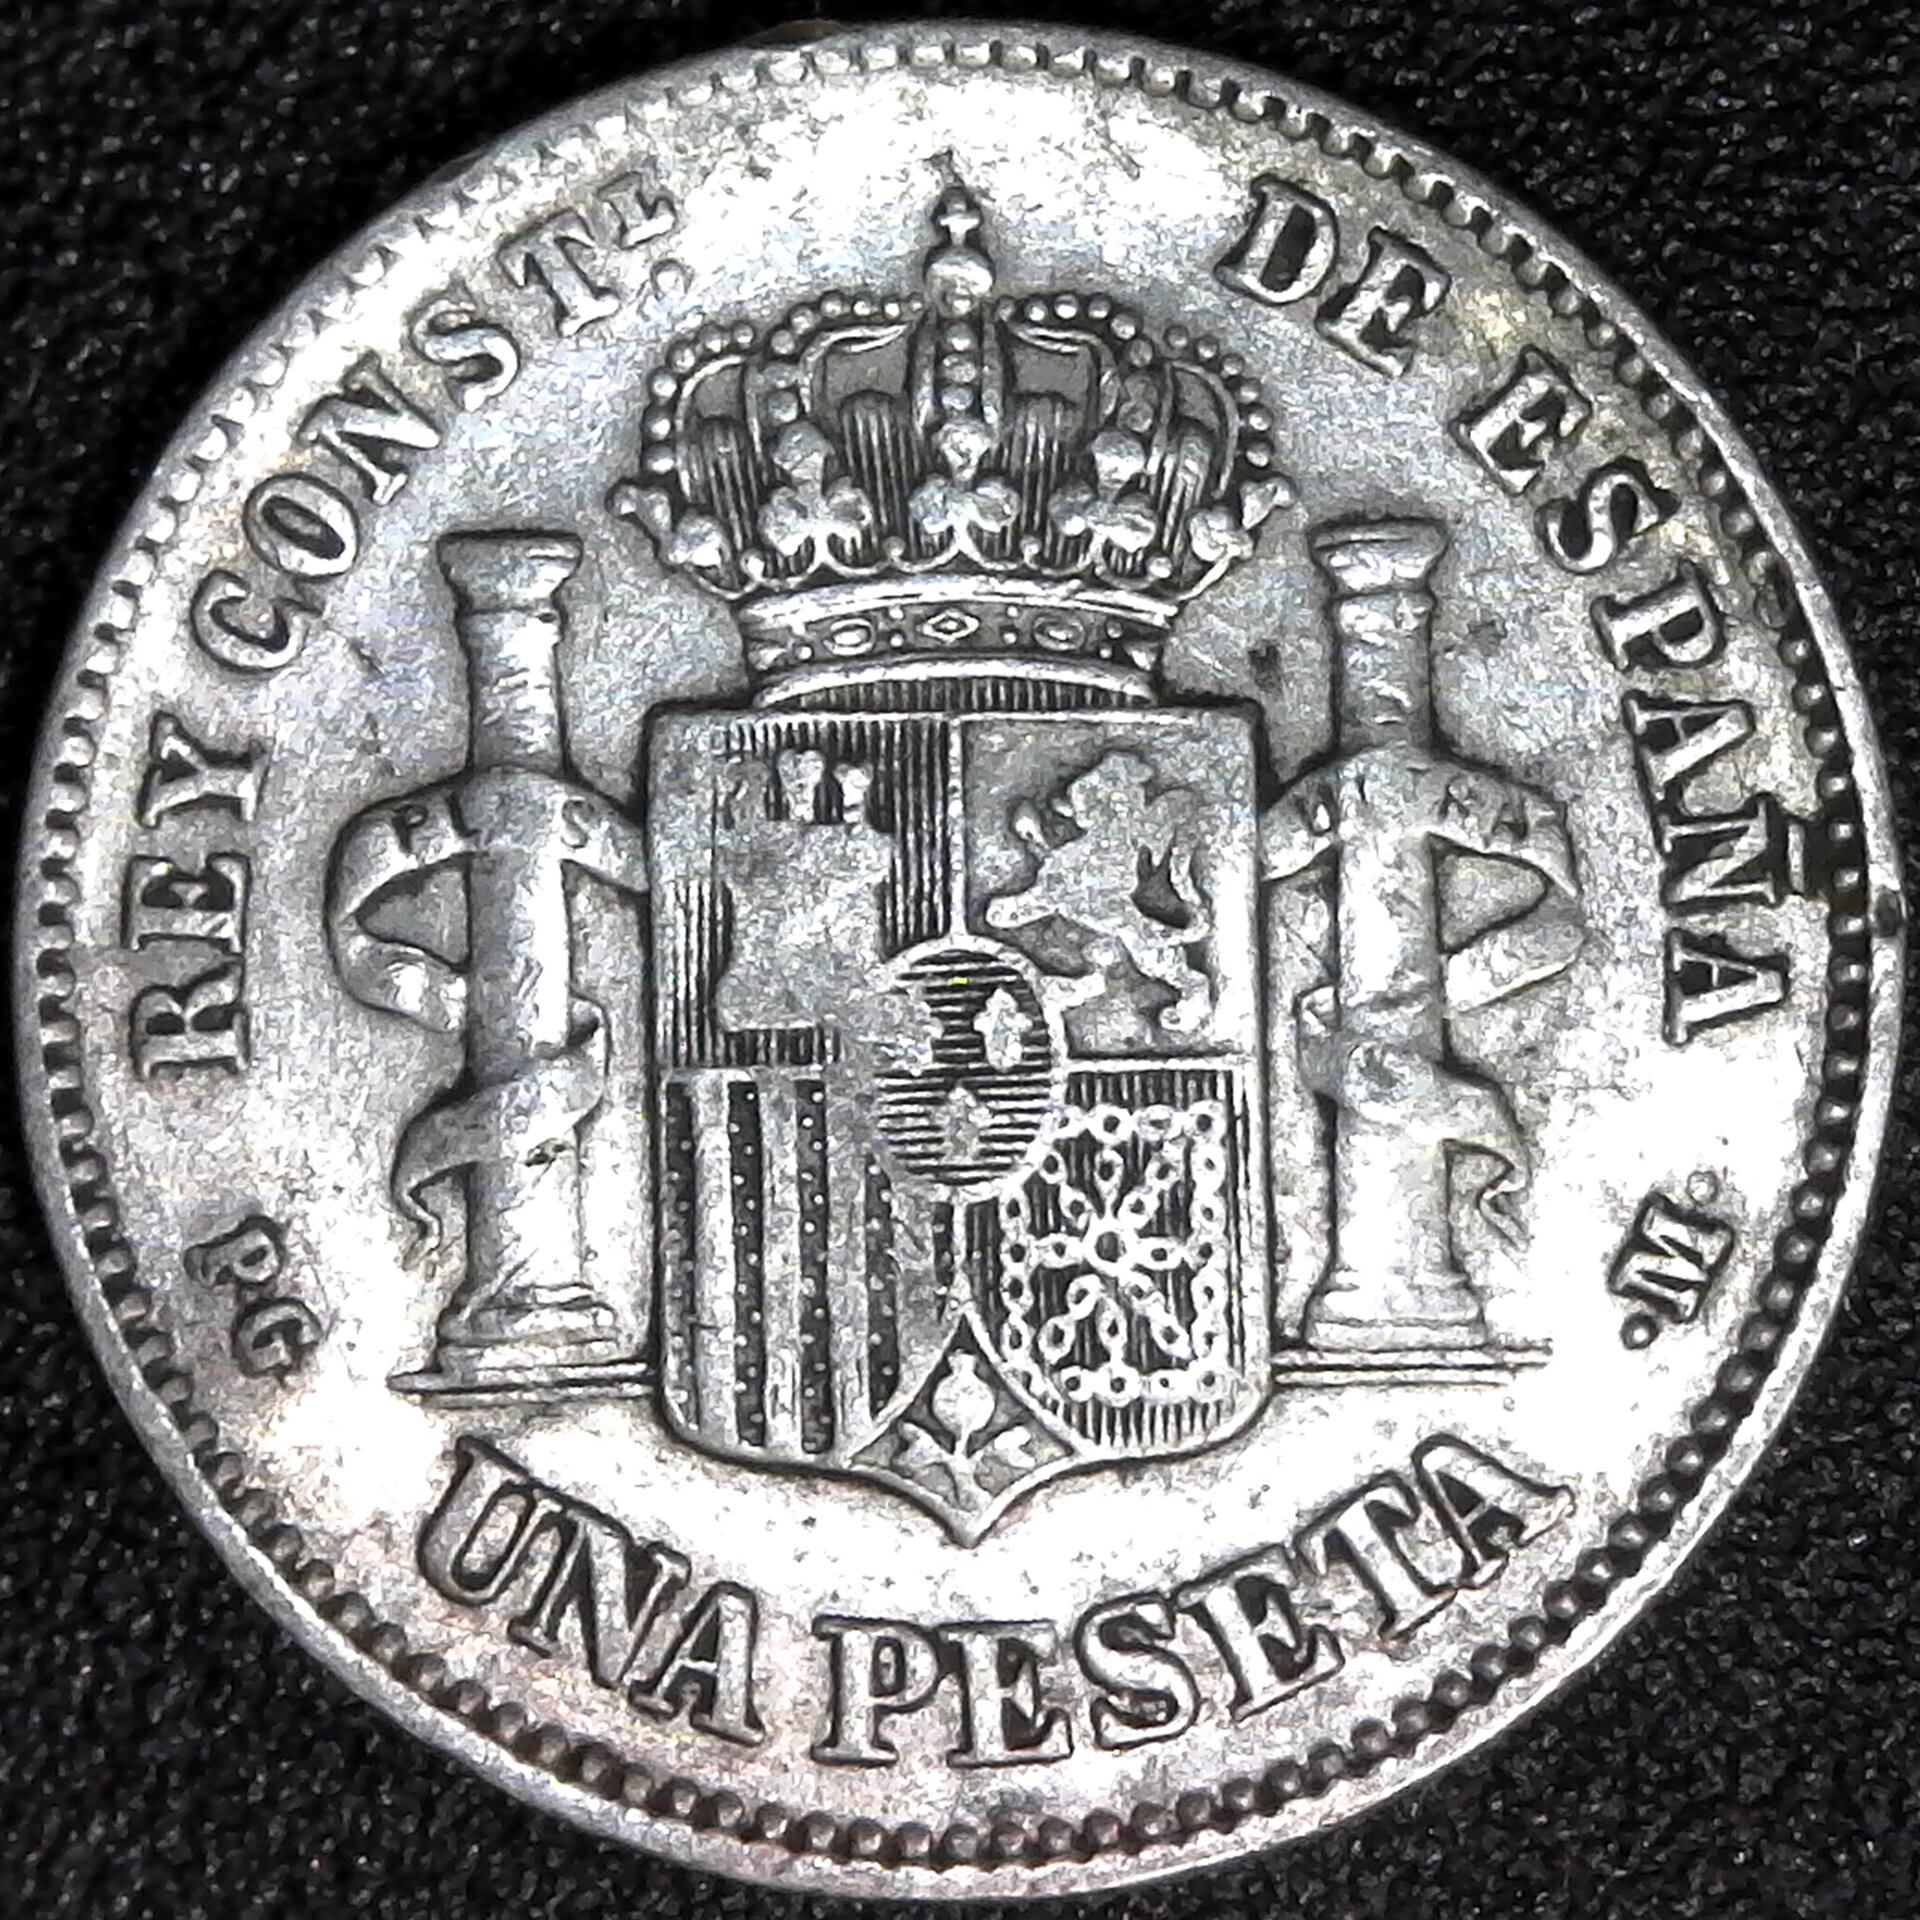 SPAIN - 1891 (91) - 1 PESETA - K691 rev b.jpg